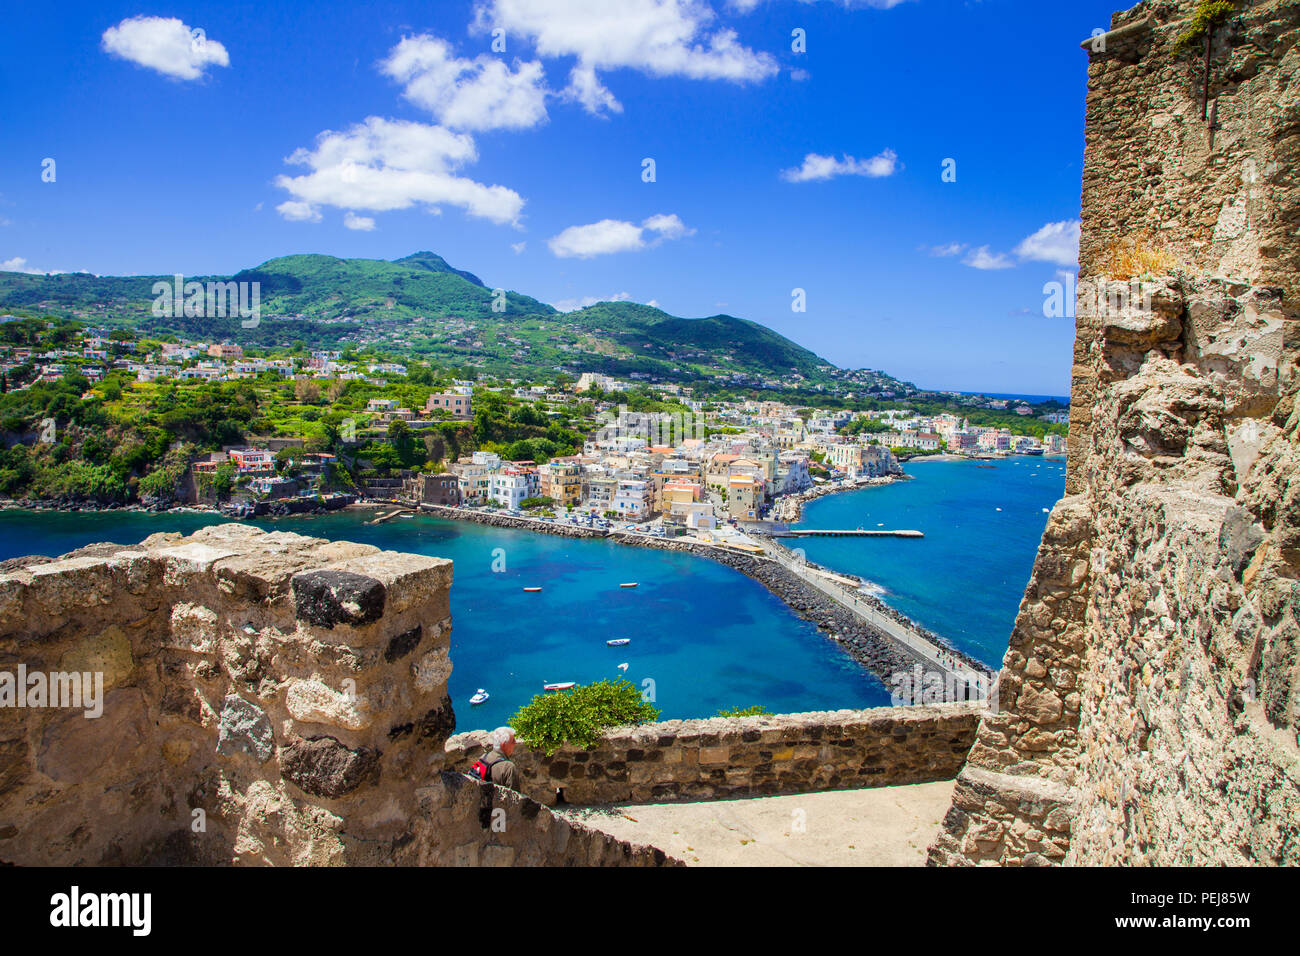 Hermosa isla Ischia,vista desde el castillo, Campania, Italia. Foto de stock